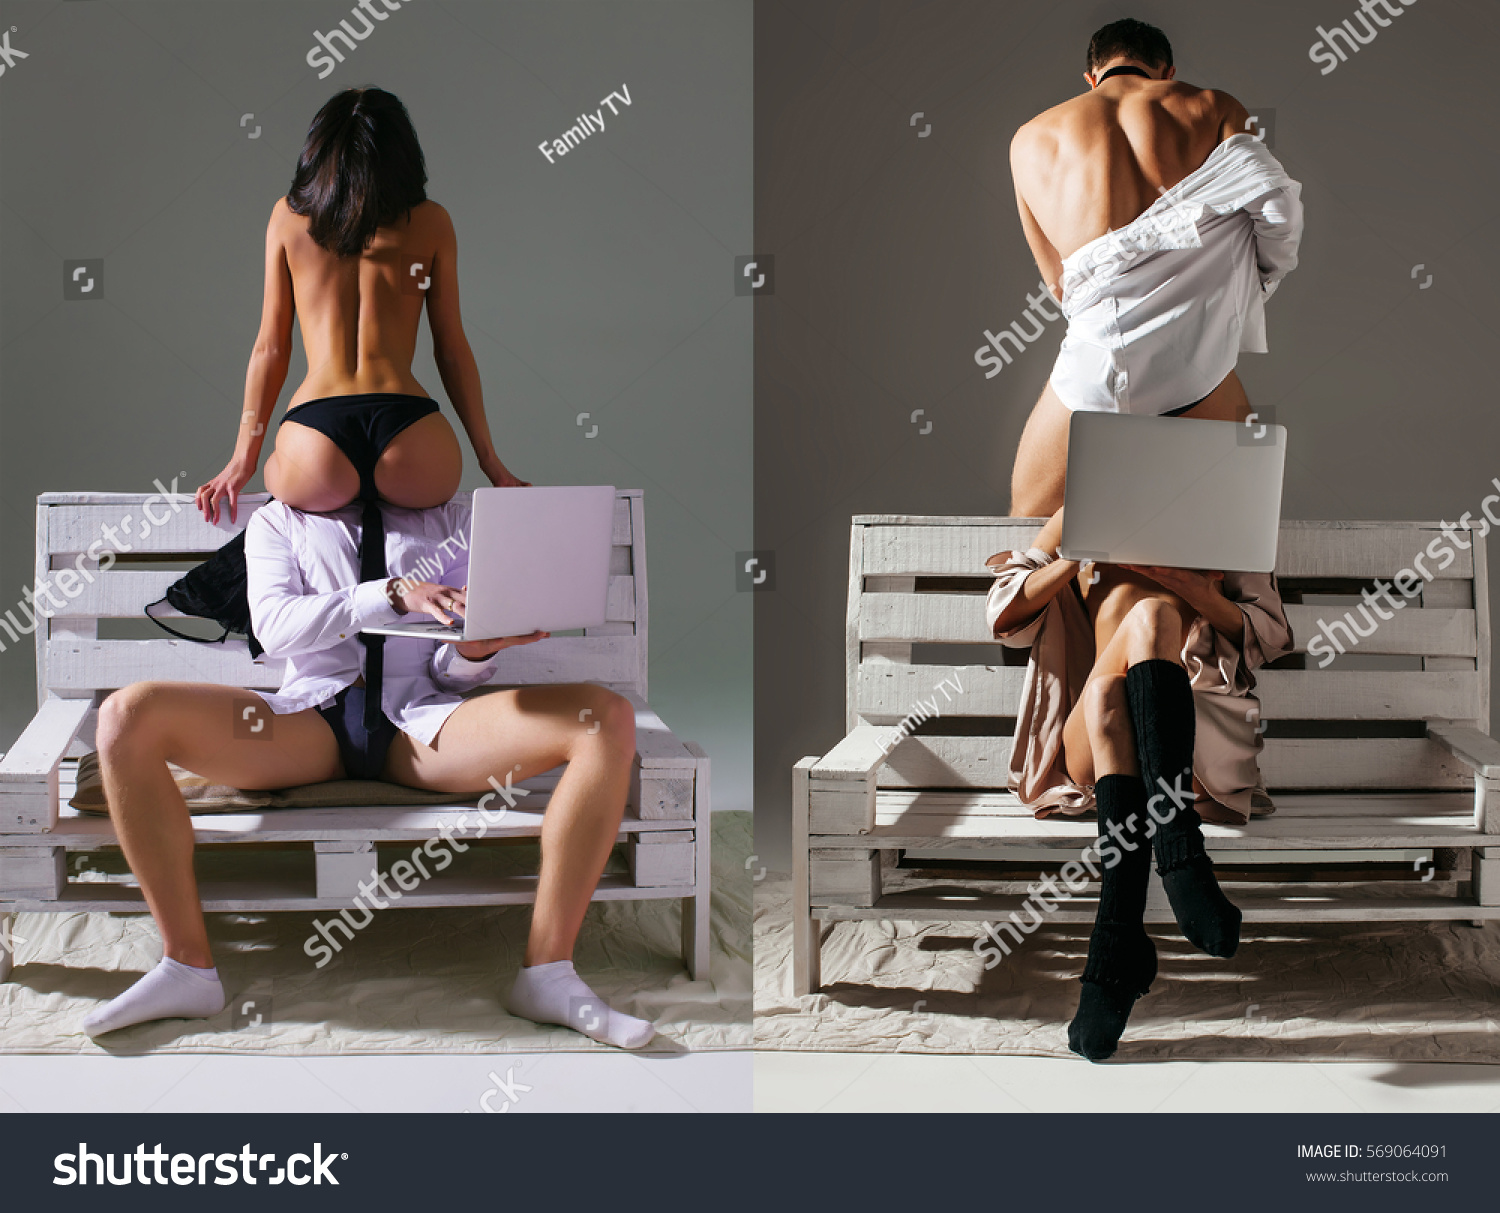 Funny Sex Pics